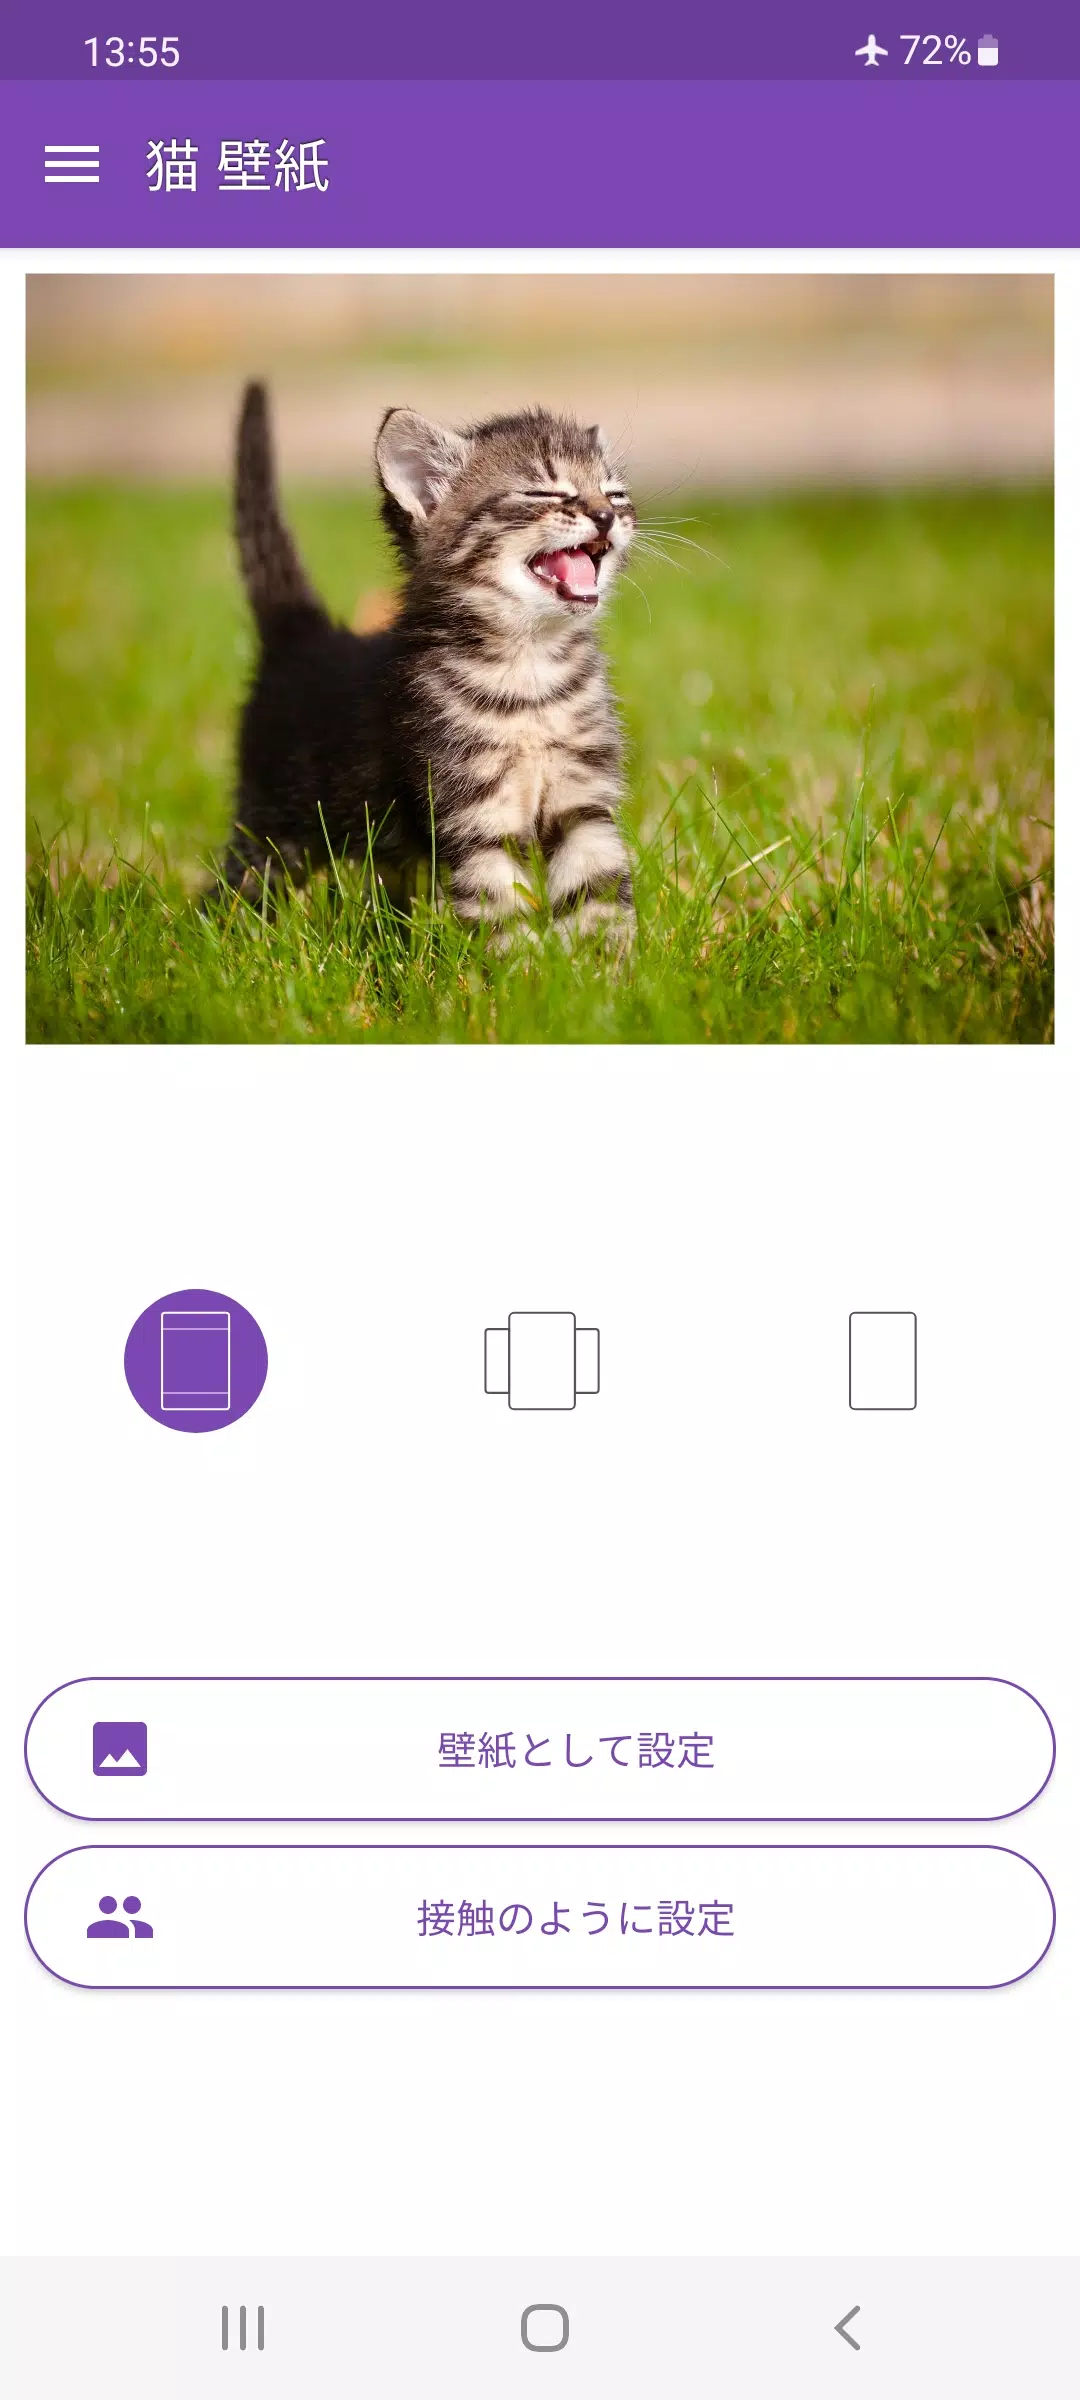 Android向けの猫 壁紙 Apkをダウンロードしましょう